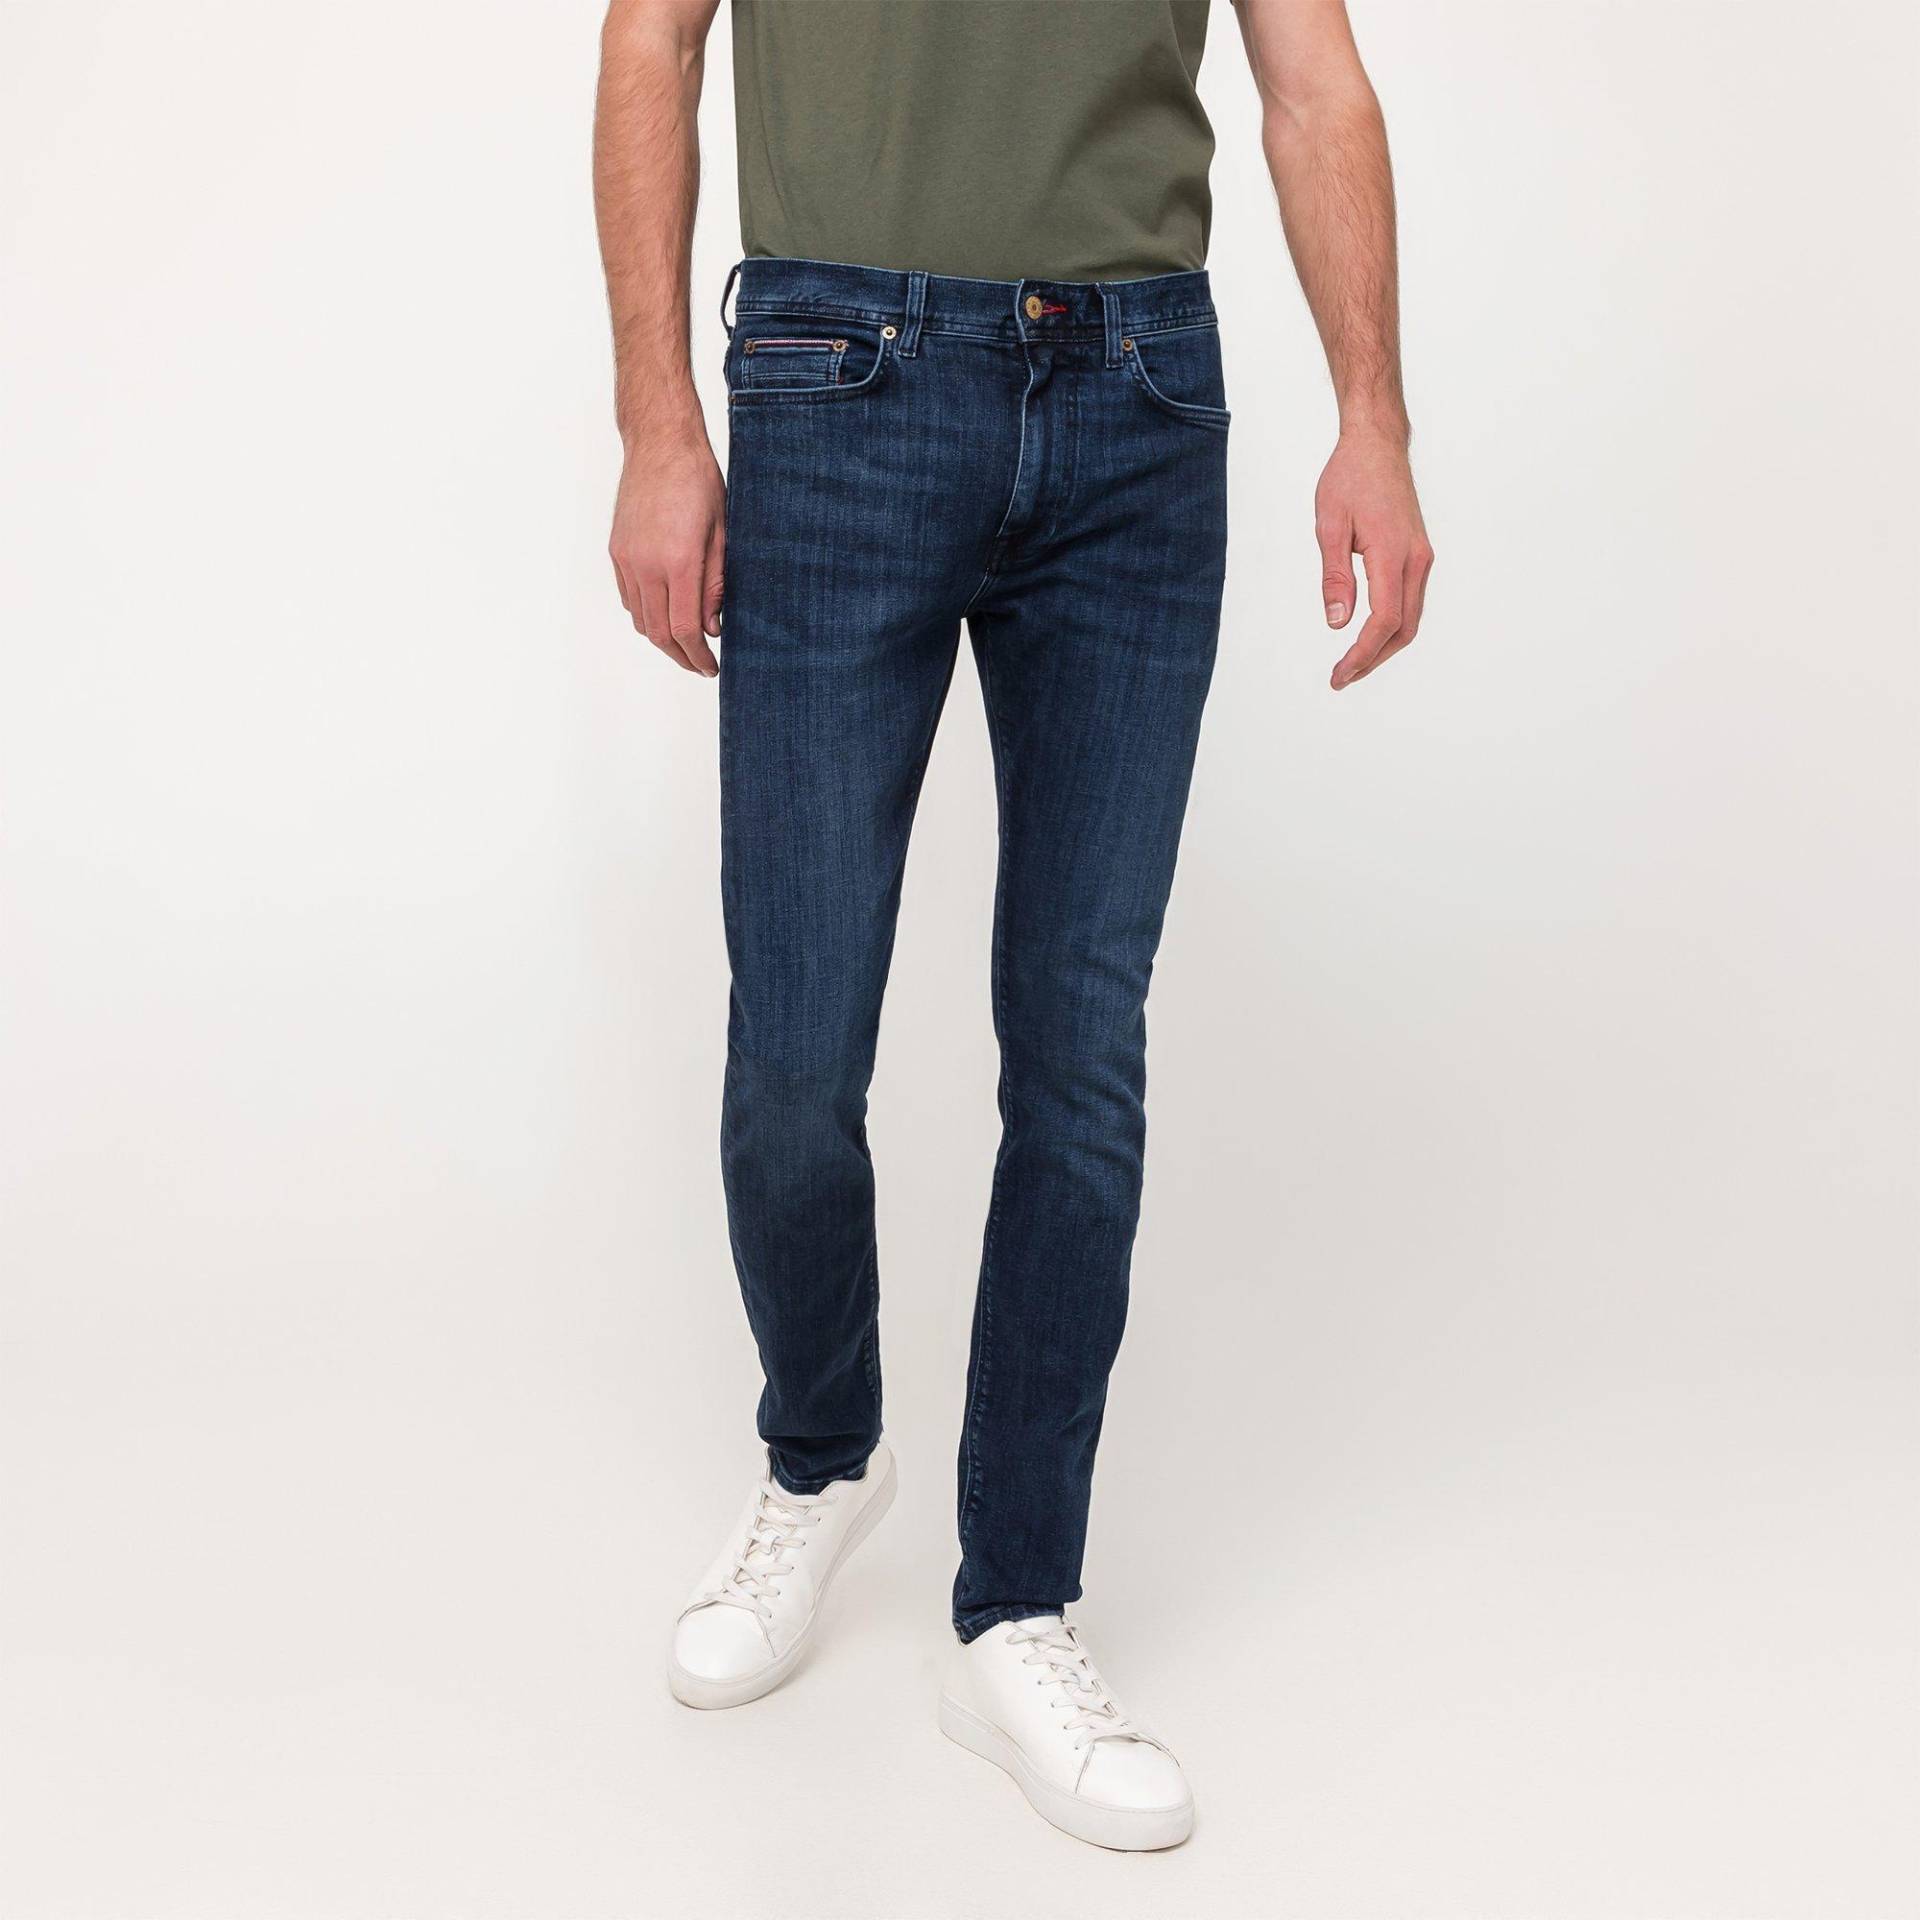 Jeans, Slim Fit Herren Indigo L32/W34 von TOMMY HILFIGER